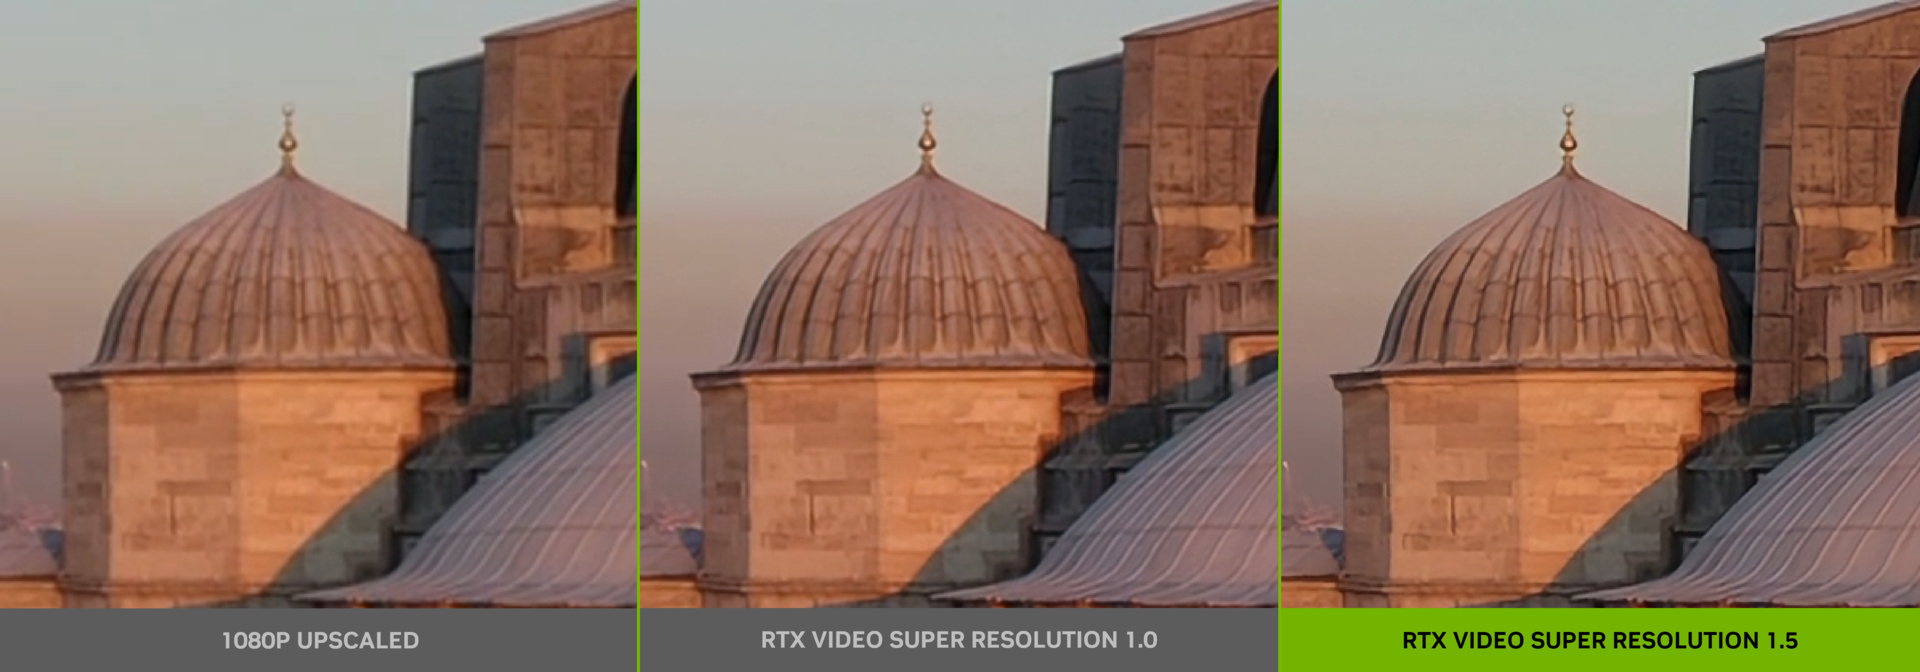 Si dice che RTX Video Supersolution 1.5 offra miglioramenti nella chiarezza e nella ricostruzione dei dettagli